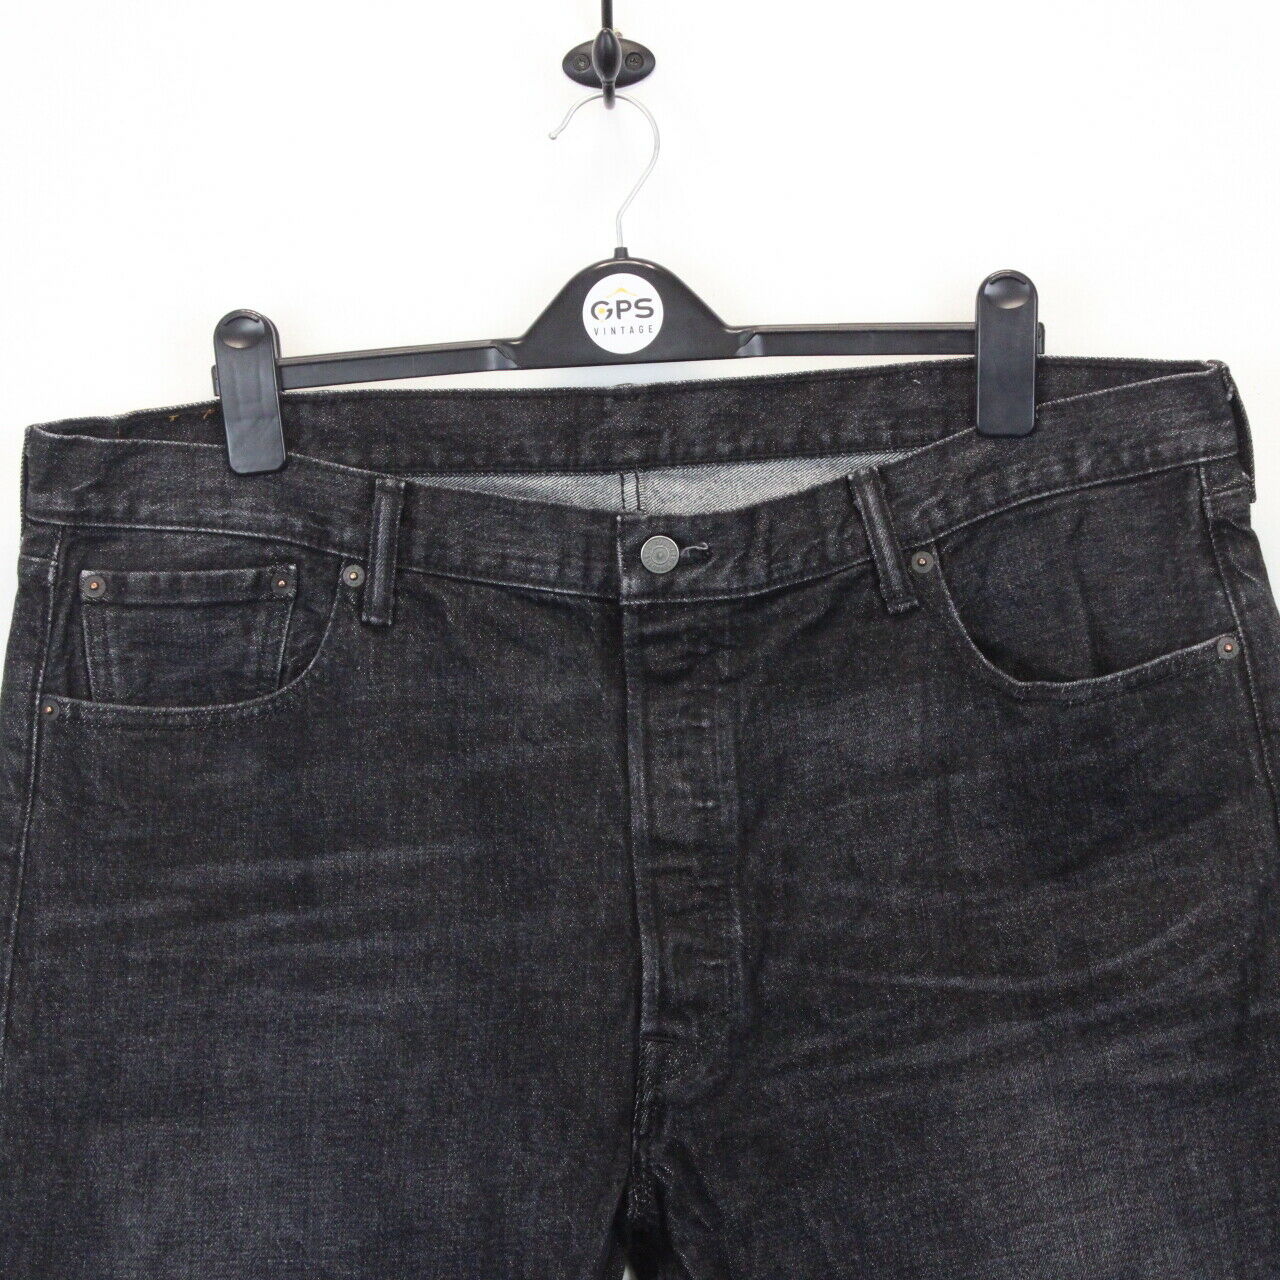 LEVIS 501 Jeans Black Charcoal | W42 L32